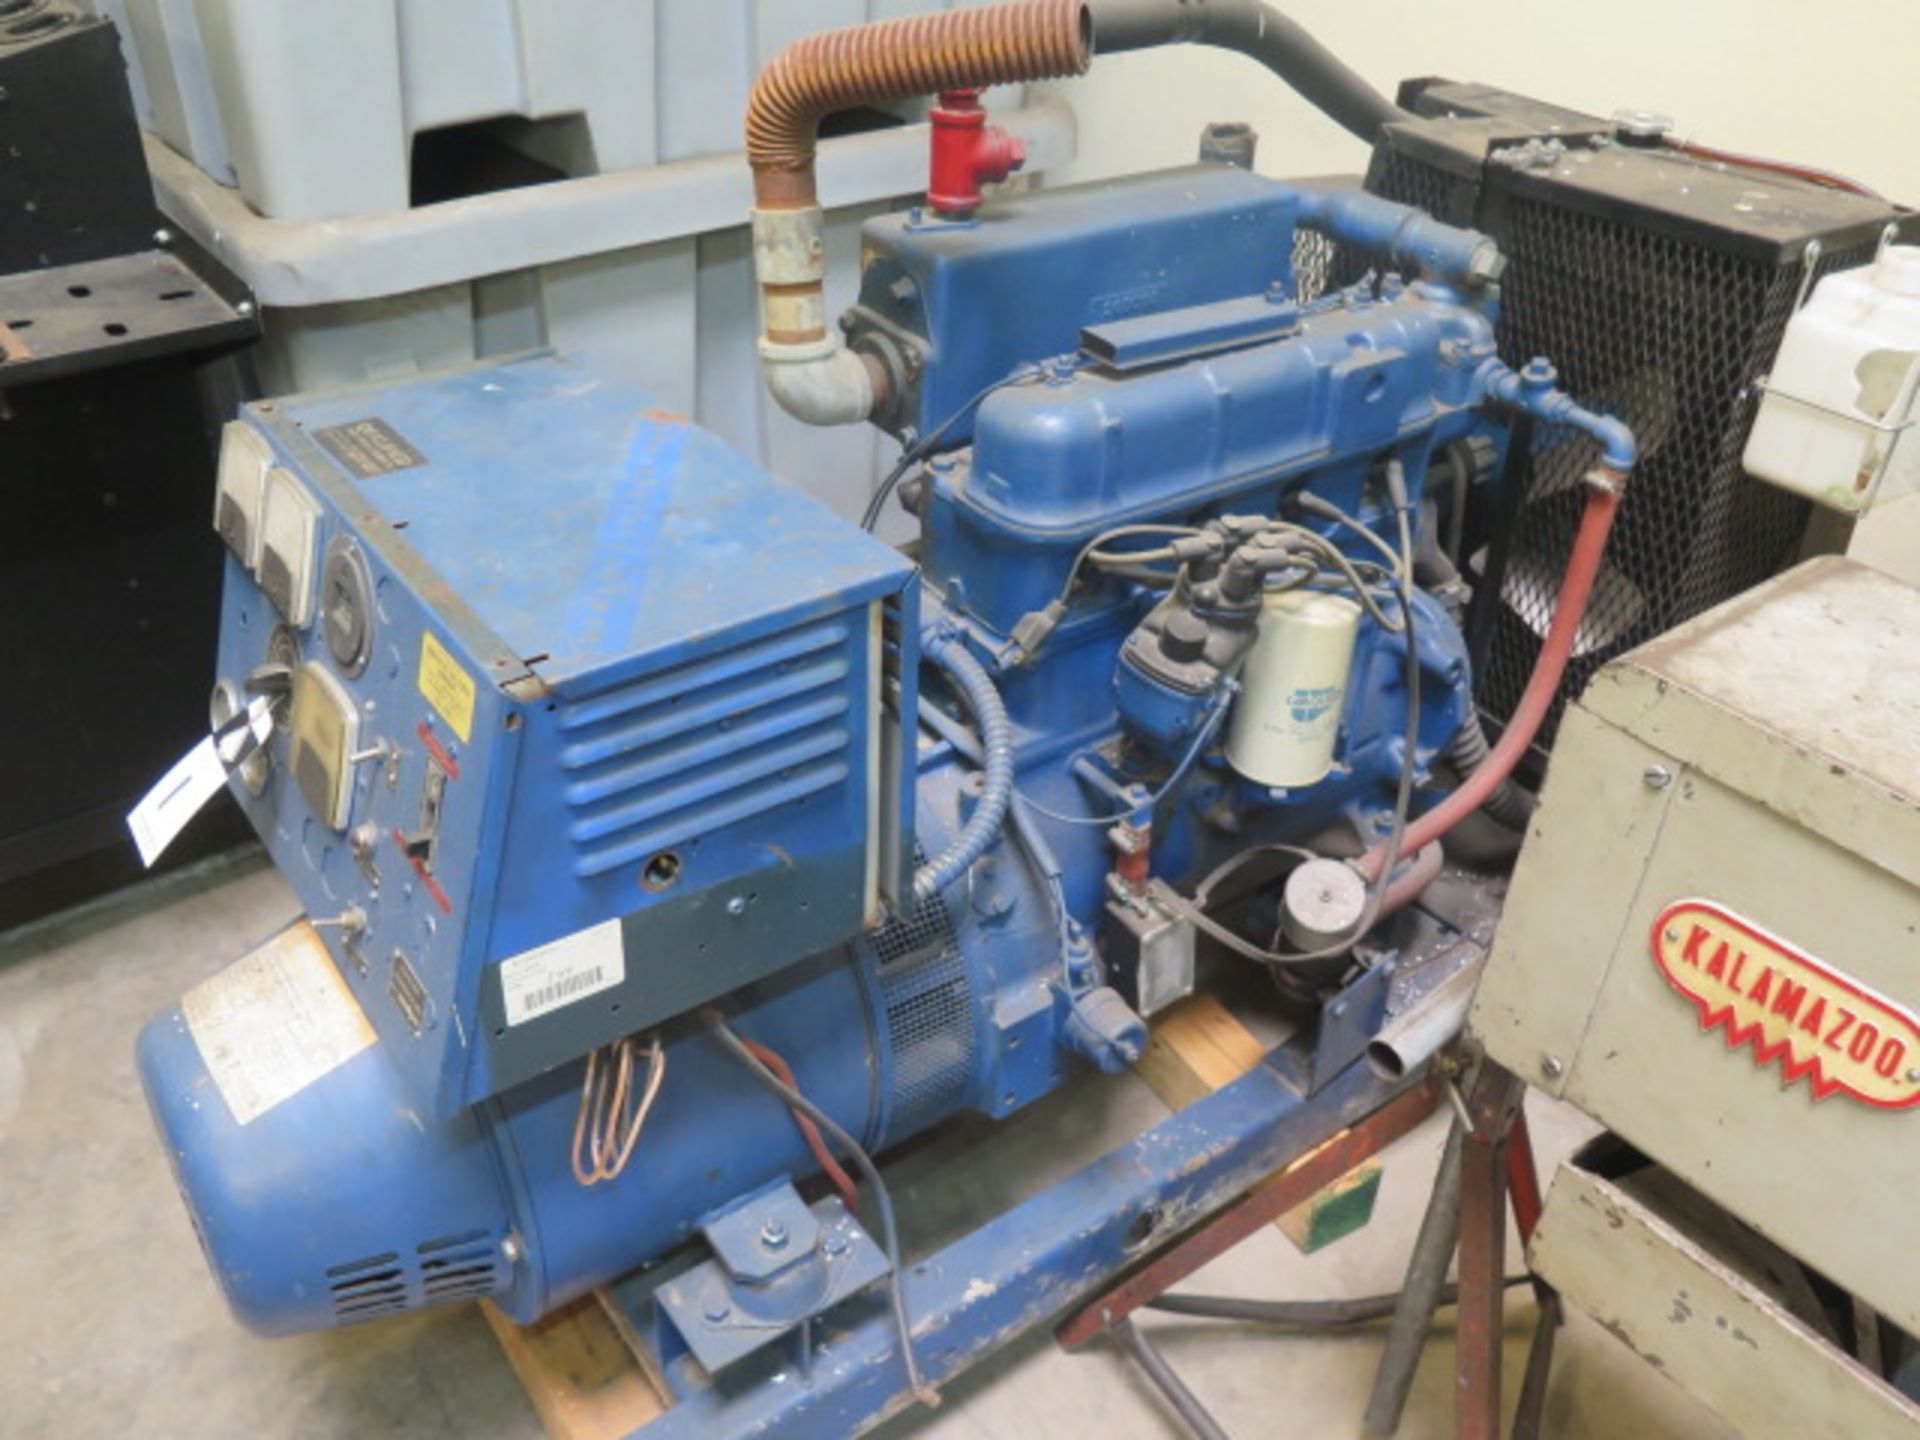 Kohler mdl. 15R58 15kW Backup Generator w/ 4-Cylinder Engine, 389 Hours - Image 2 of 6